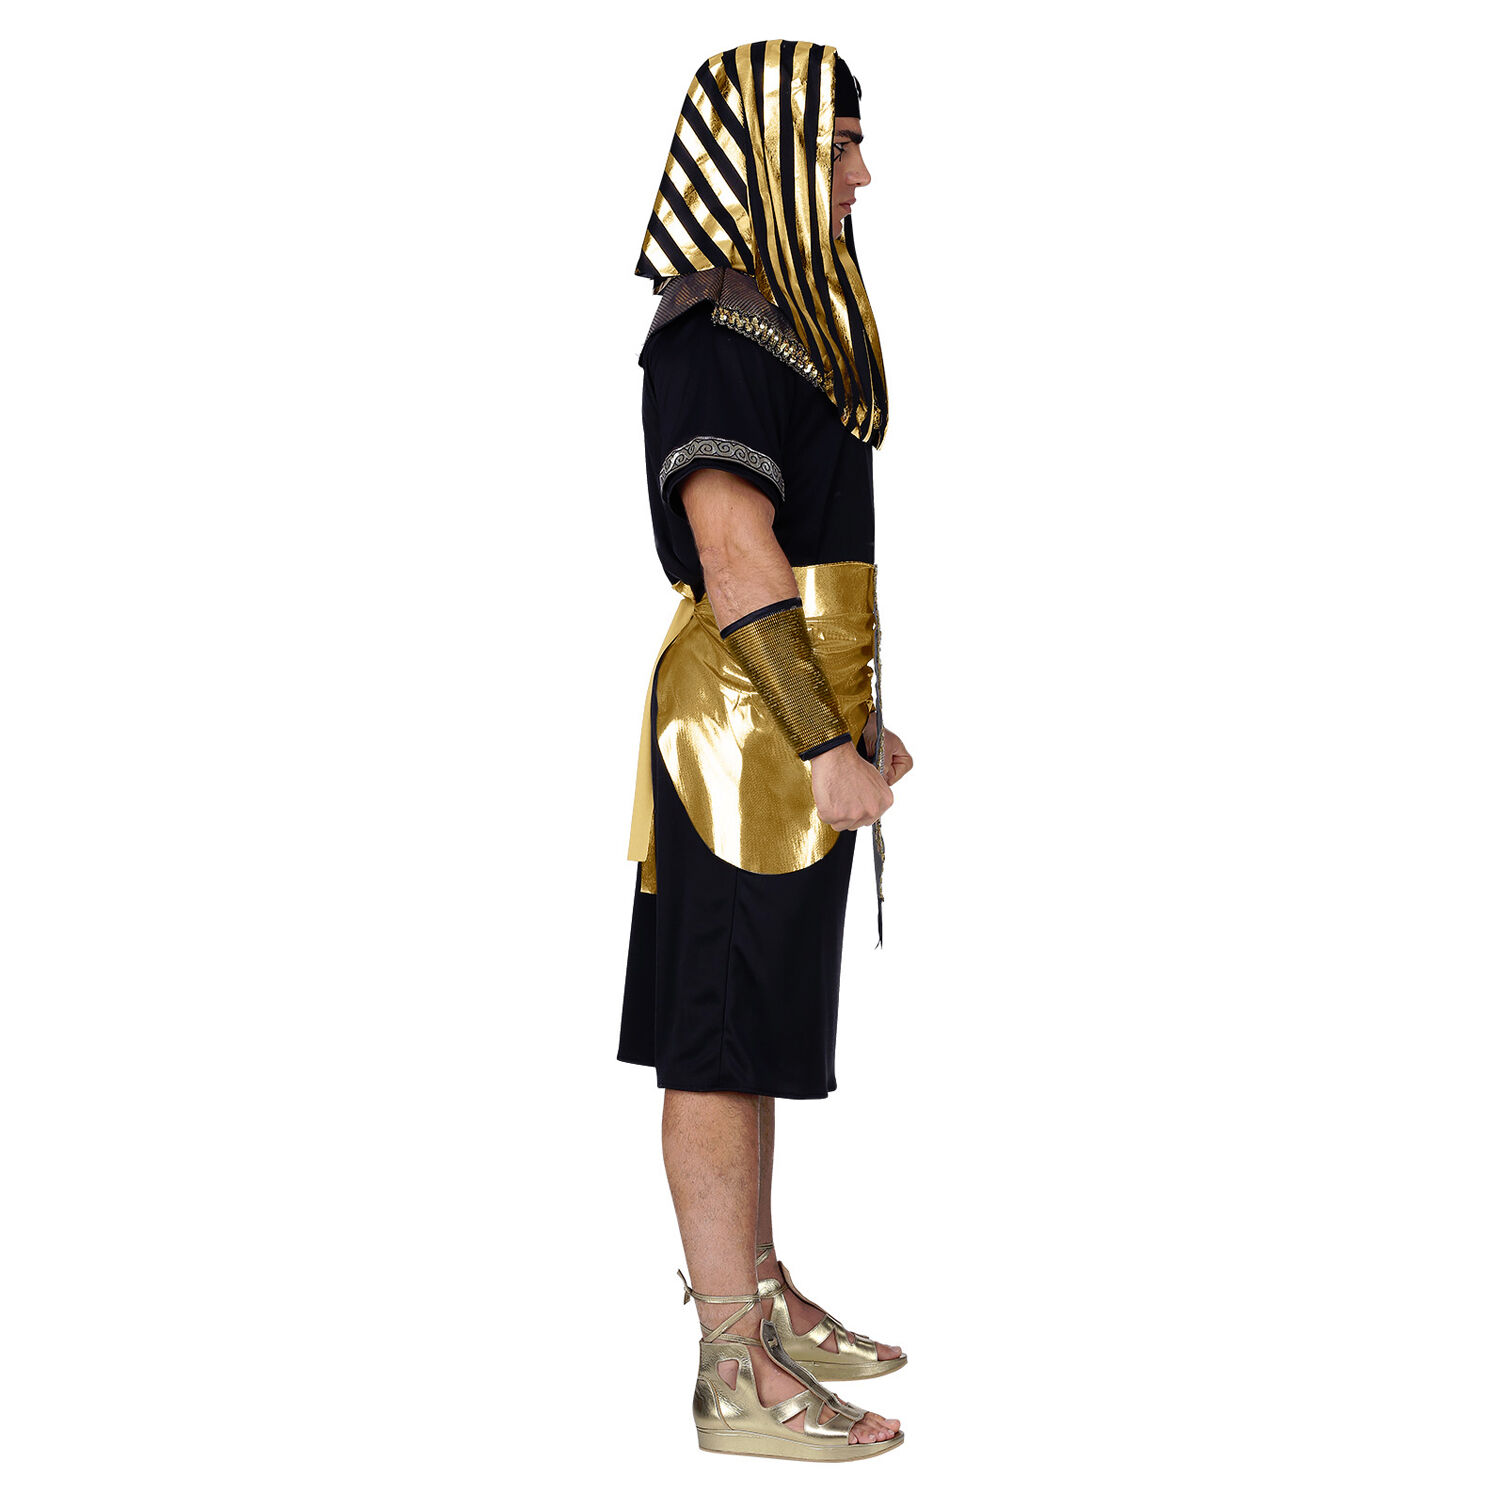 NEU Herren-Kostm Pharao / gypter, schwarz mit Grtel, Kragen und Kopfbedeckung, Gr. S Bild 2